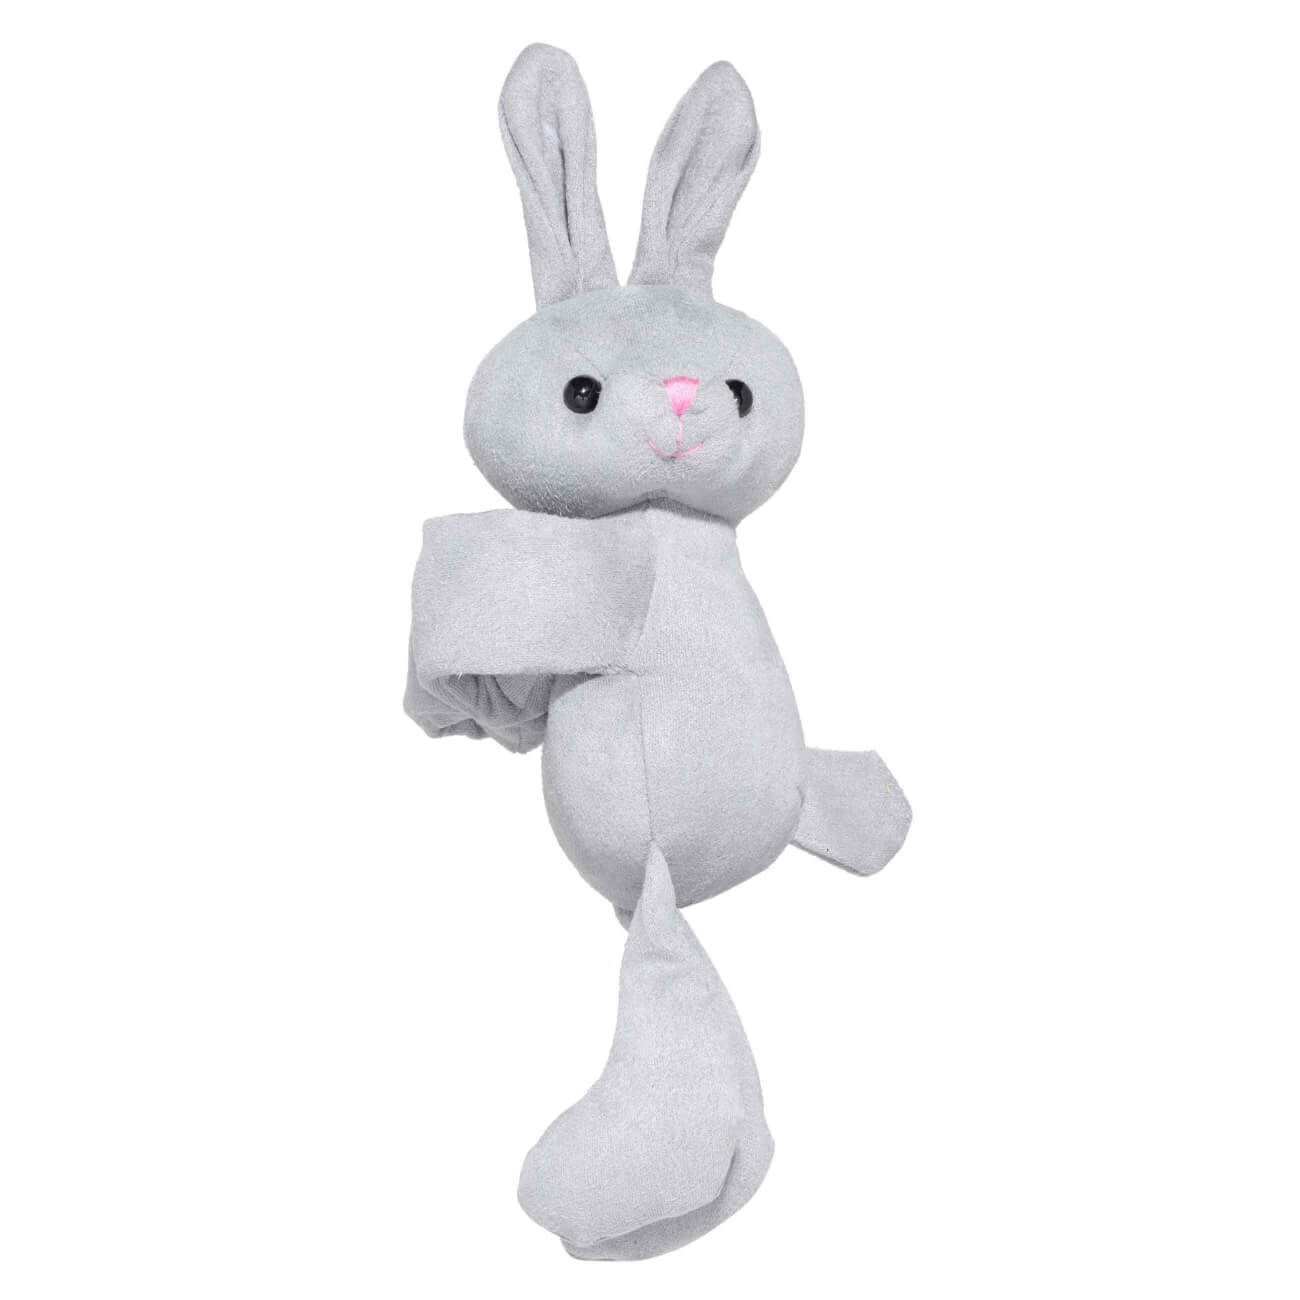 Игрушка-браслет, 21х32 см, мягкая, полиэстер, серая, Заяц, Rabbit игрушка антистресс 9 см полиуретан серая заяц rabbit